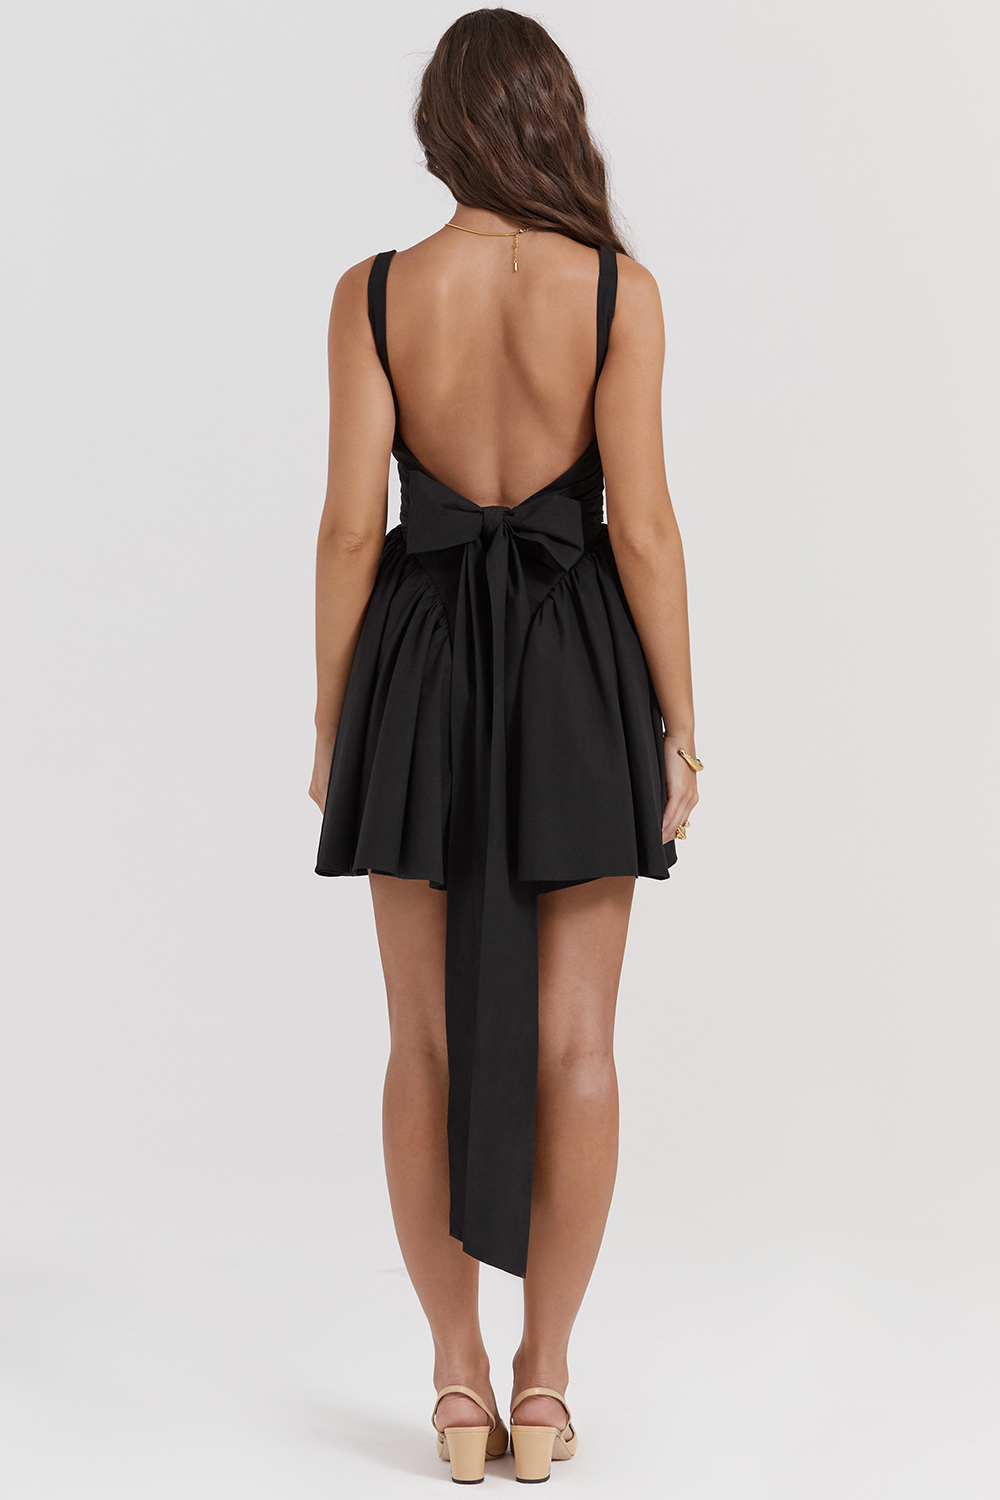 Clothing : Mini Dresses : 'Florianne' Black Bow Mini Dress